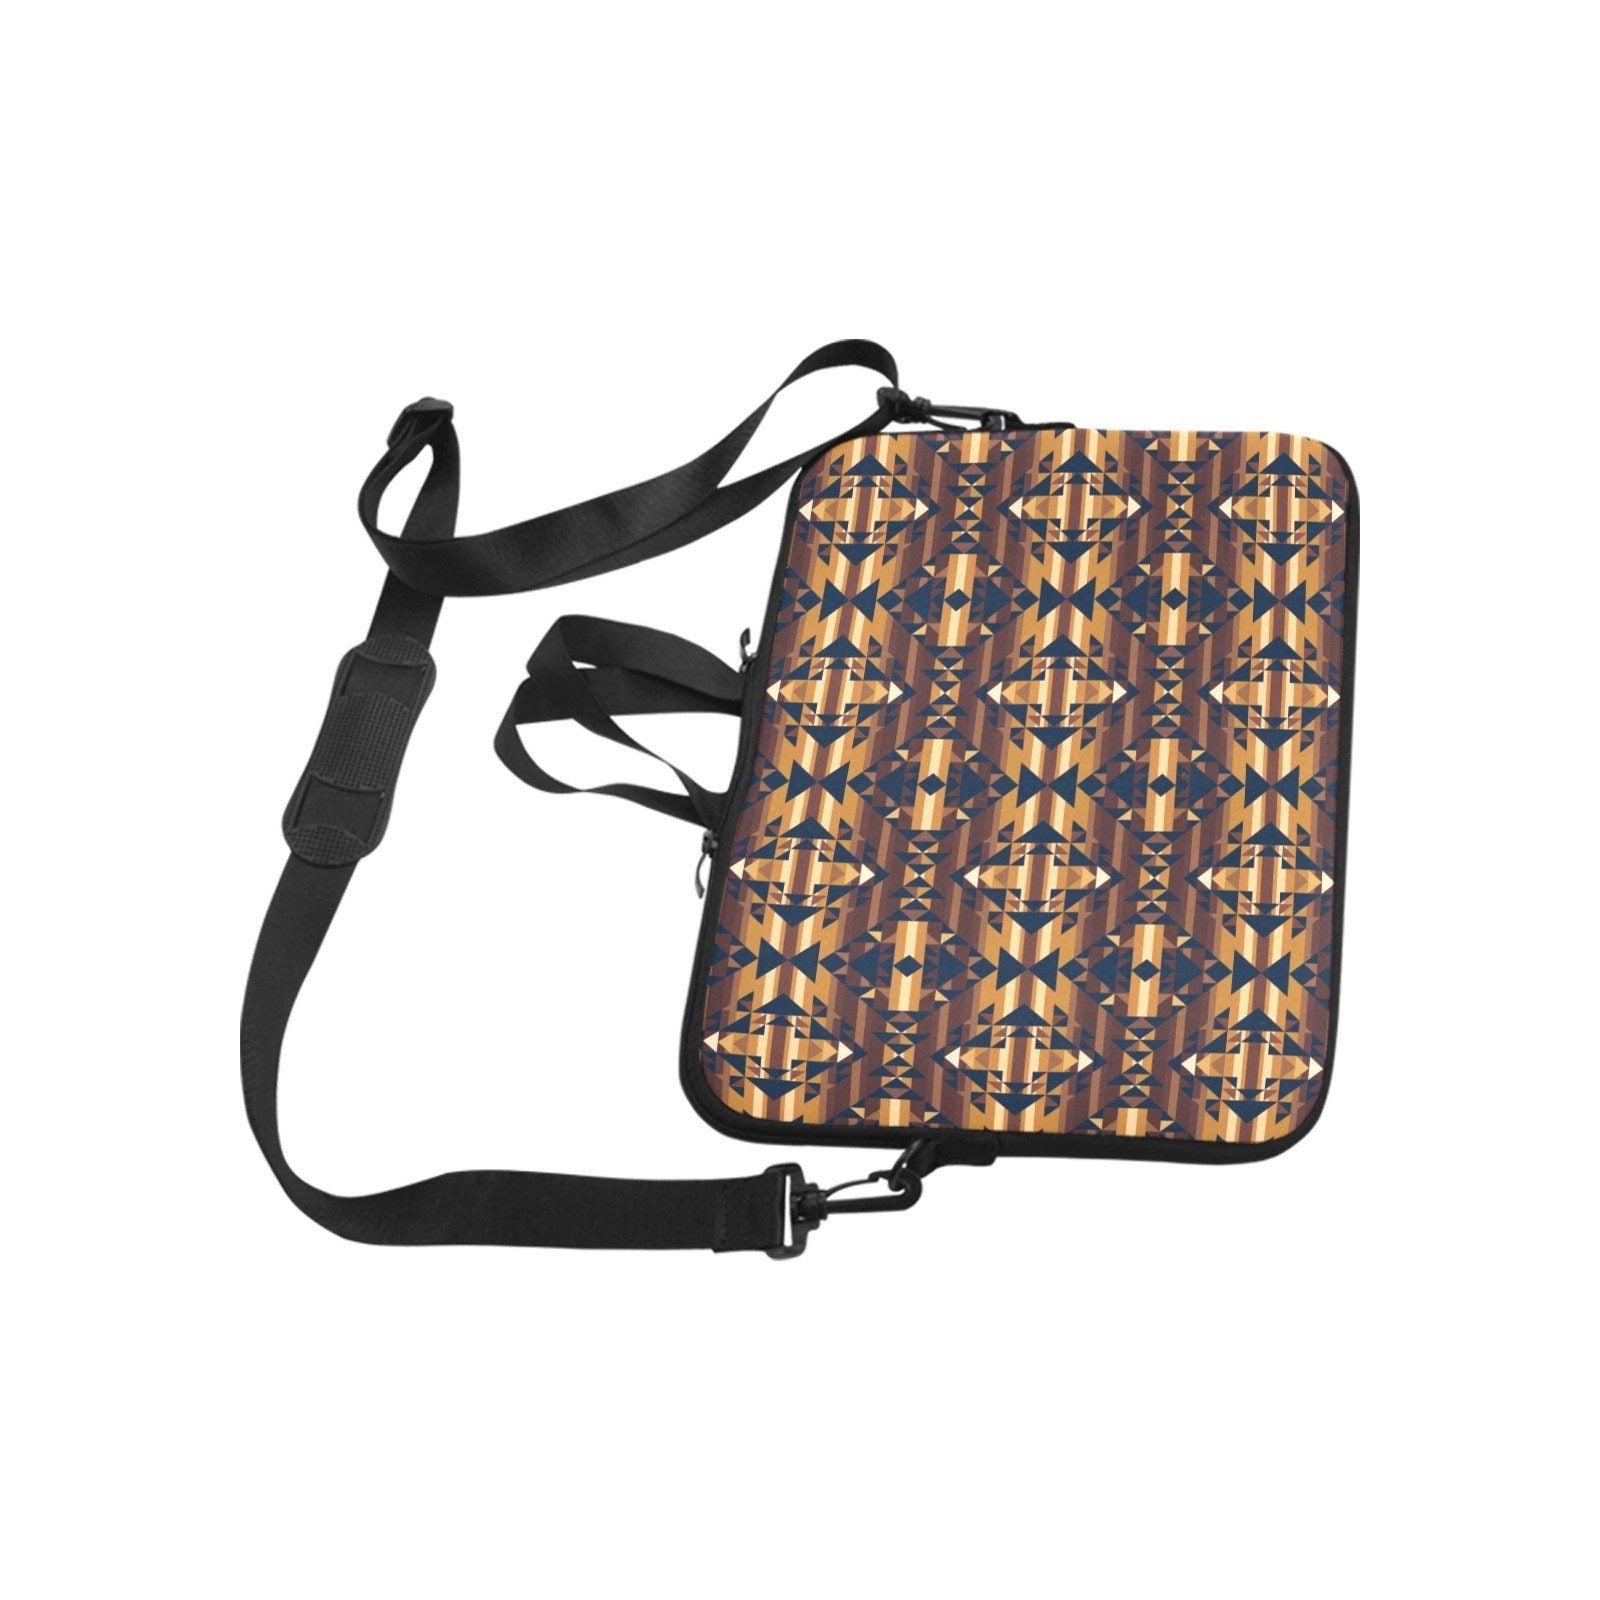 Marron Cloud Laptop Handbags 11" bag e-joyer 